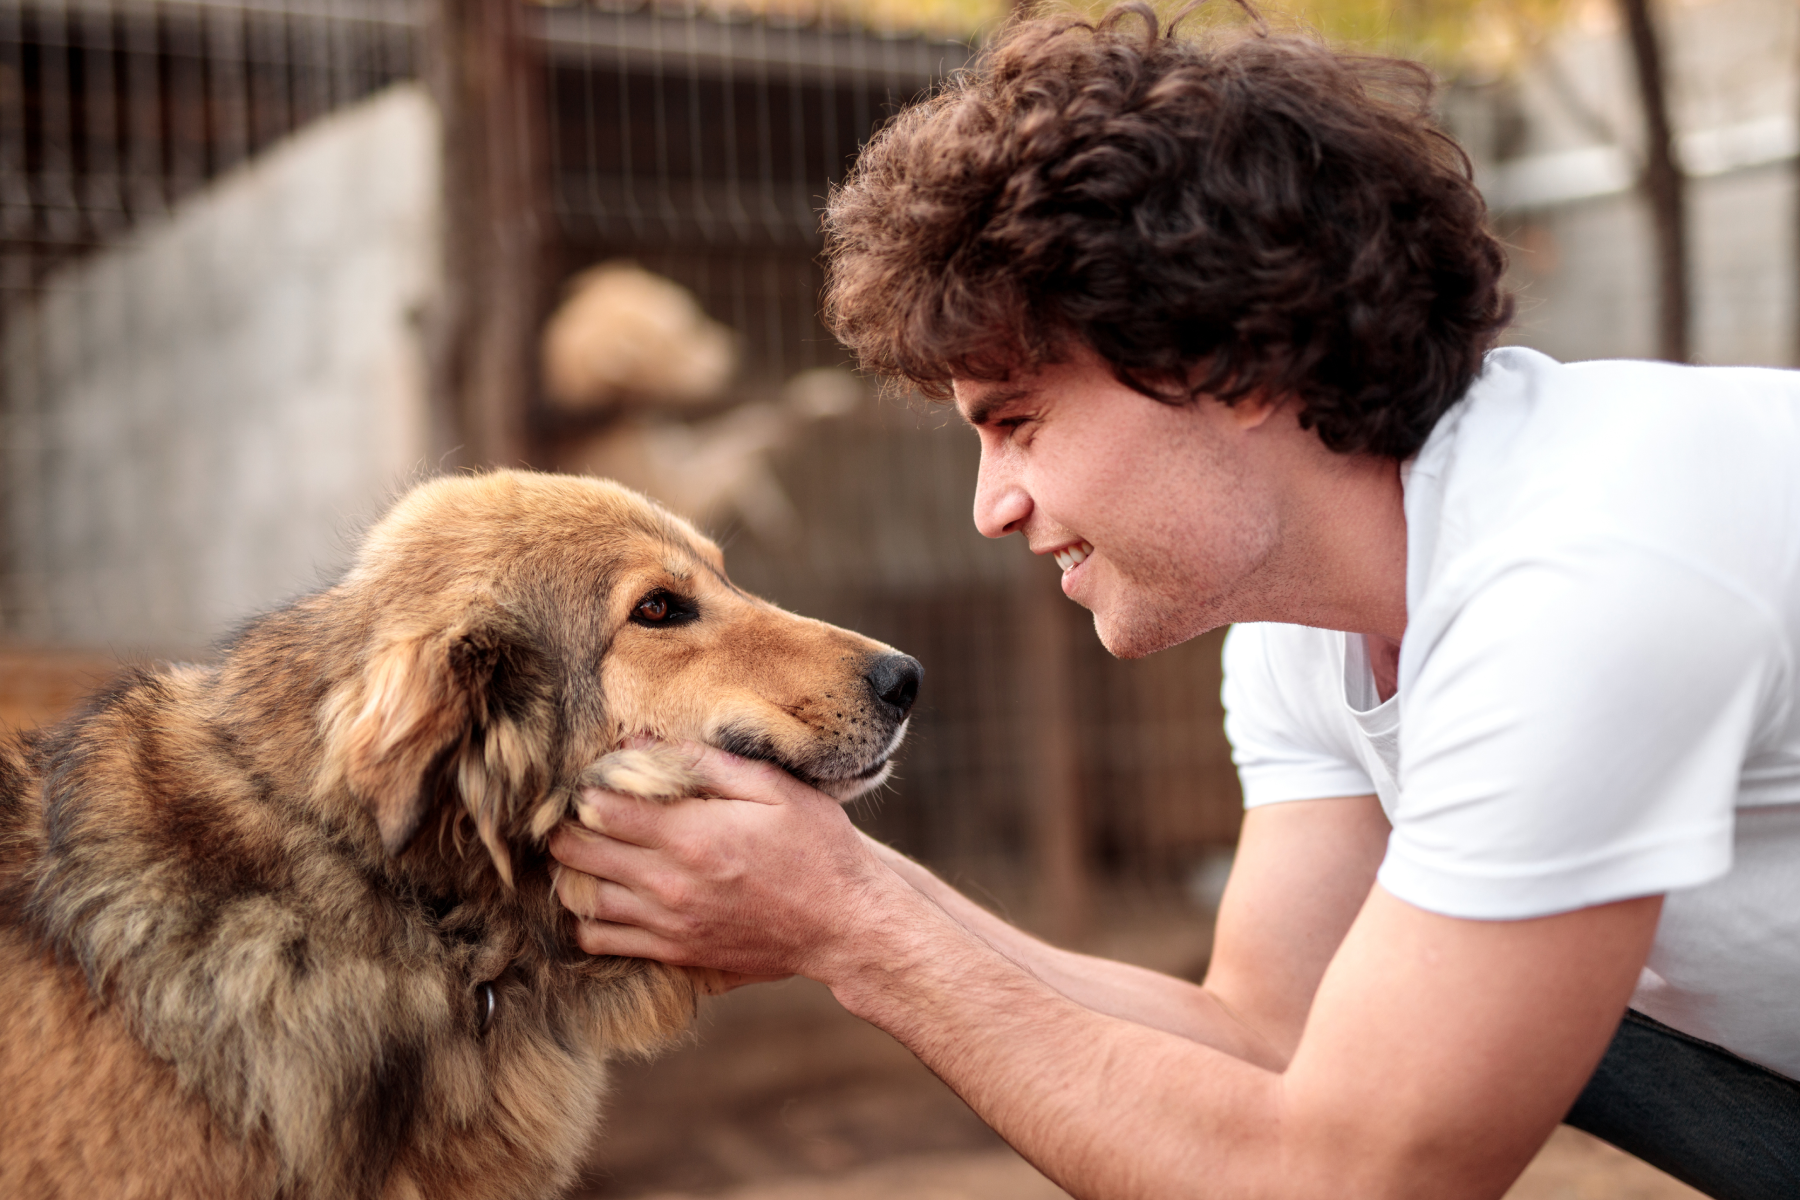 Houston Dog Adoption: Where To Rescue A Dog In Houston, TX